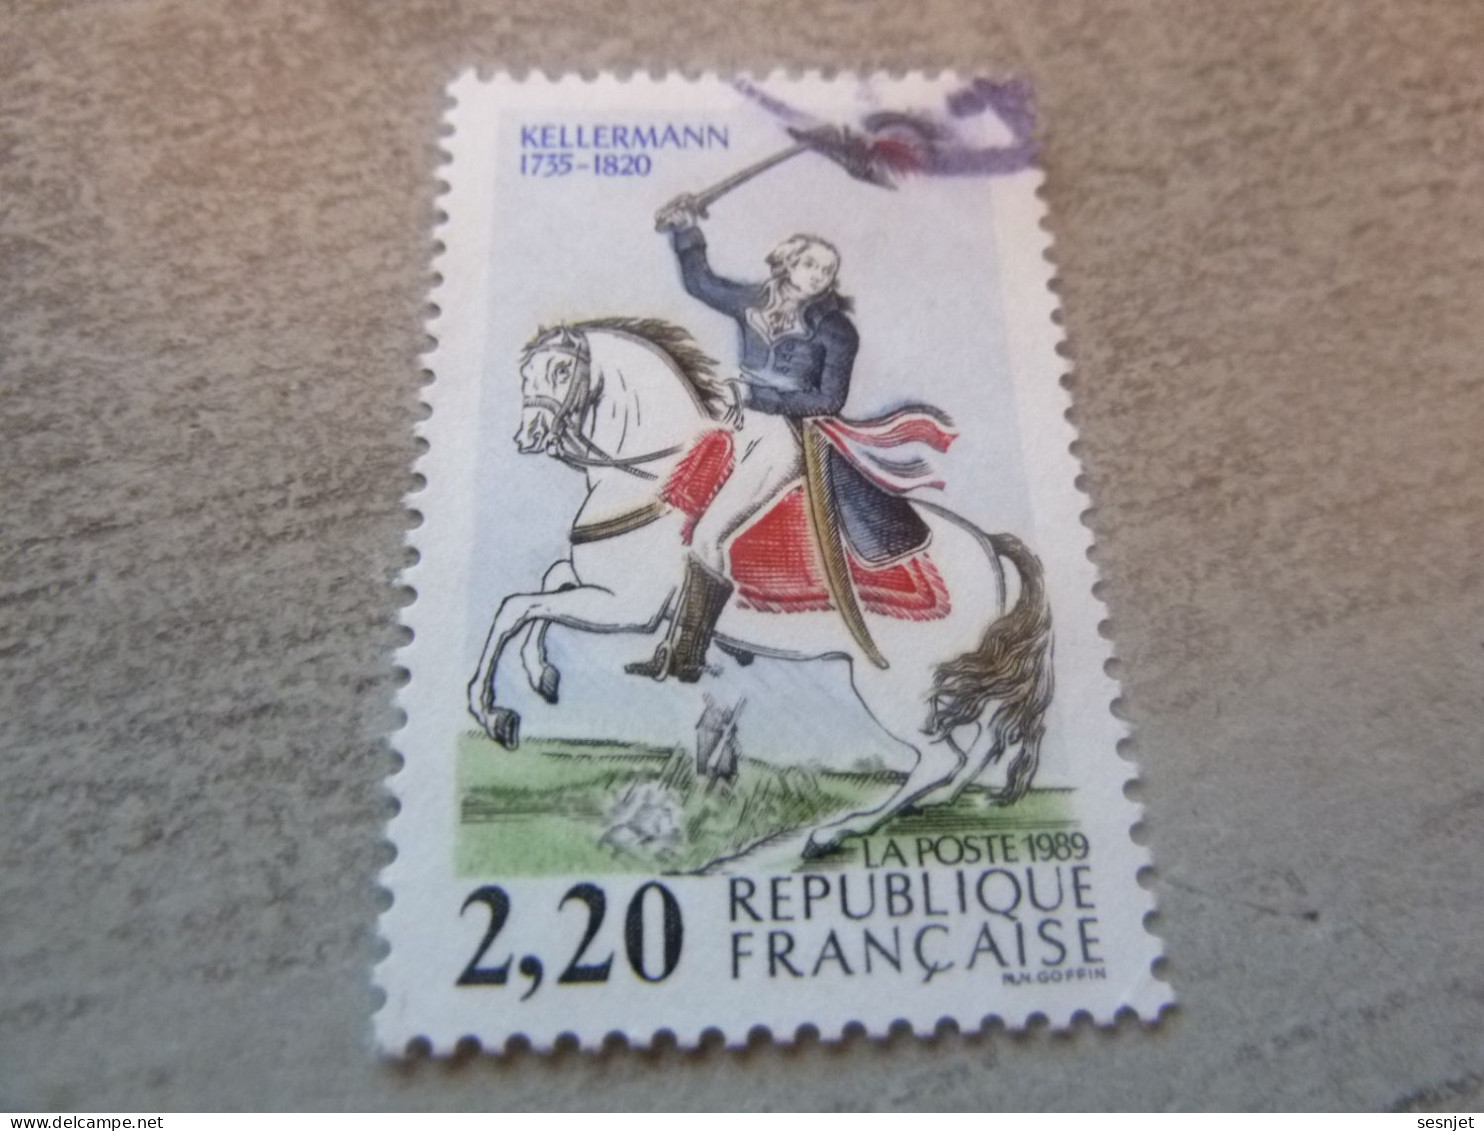 François-Christophe Kellermann (1735-1820) Général - 2f.20 - Yt 2595 - Multicolore - Oblitéré - Année 1989 - - Used Stamps